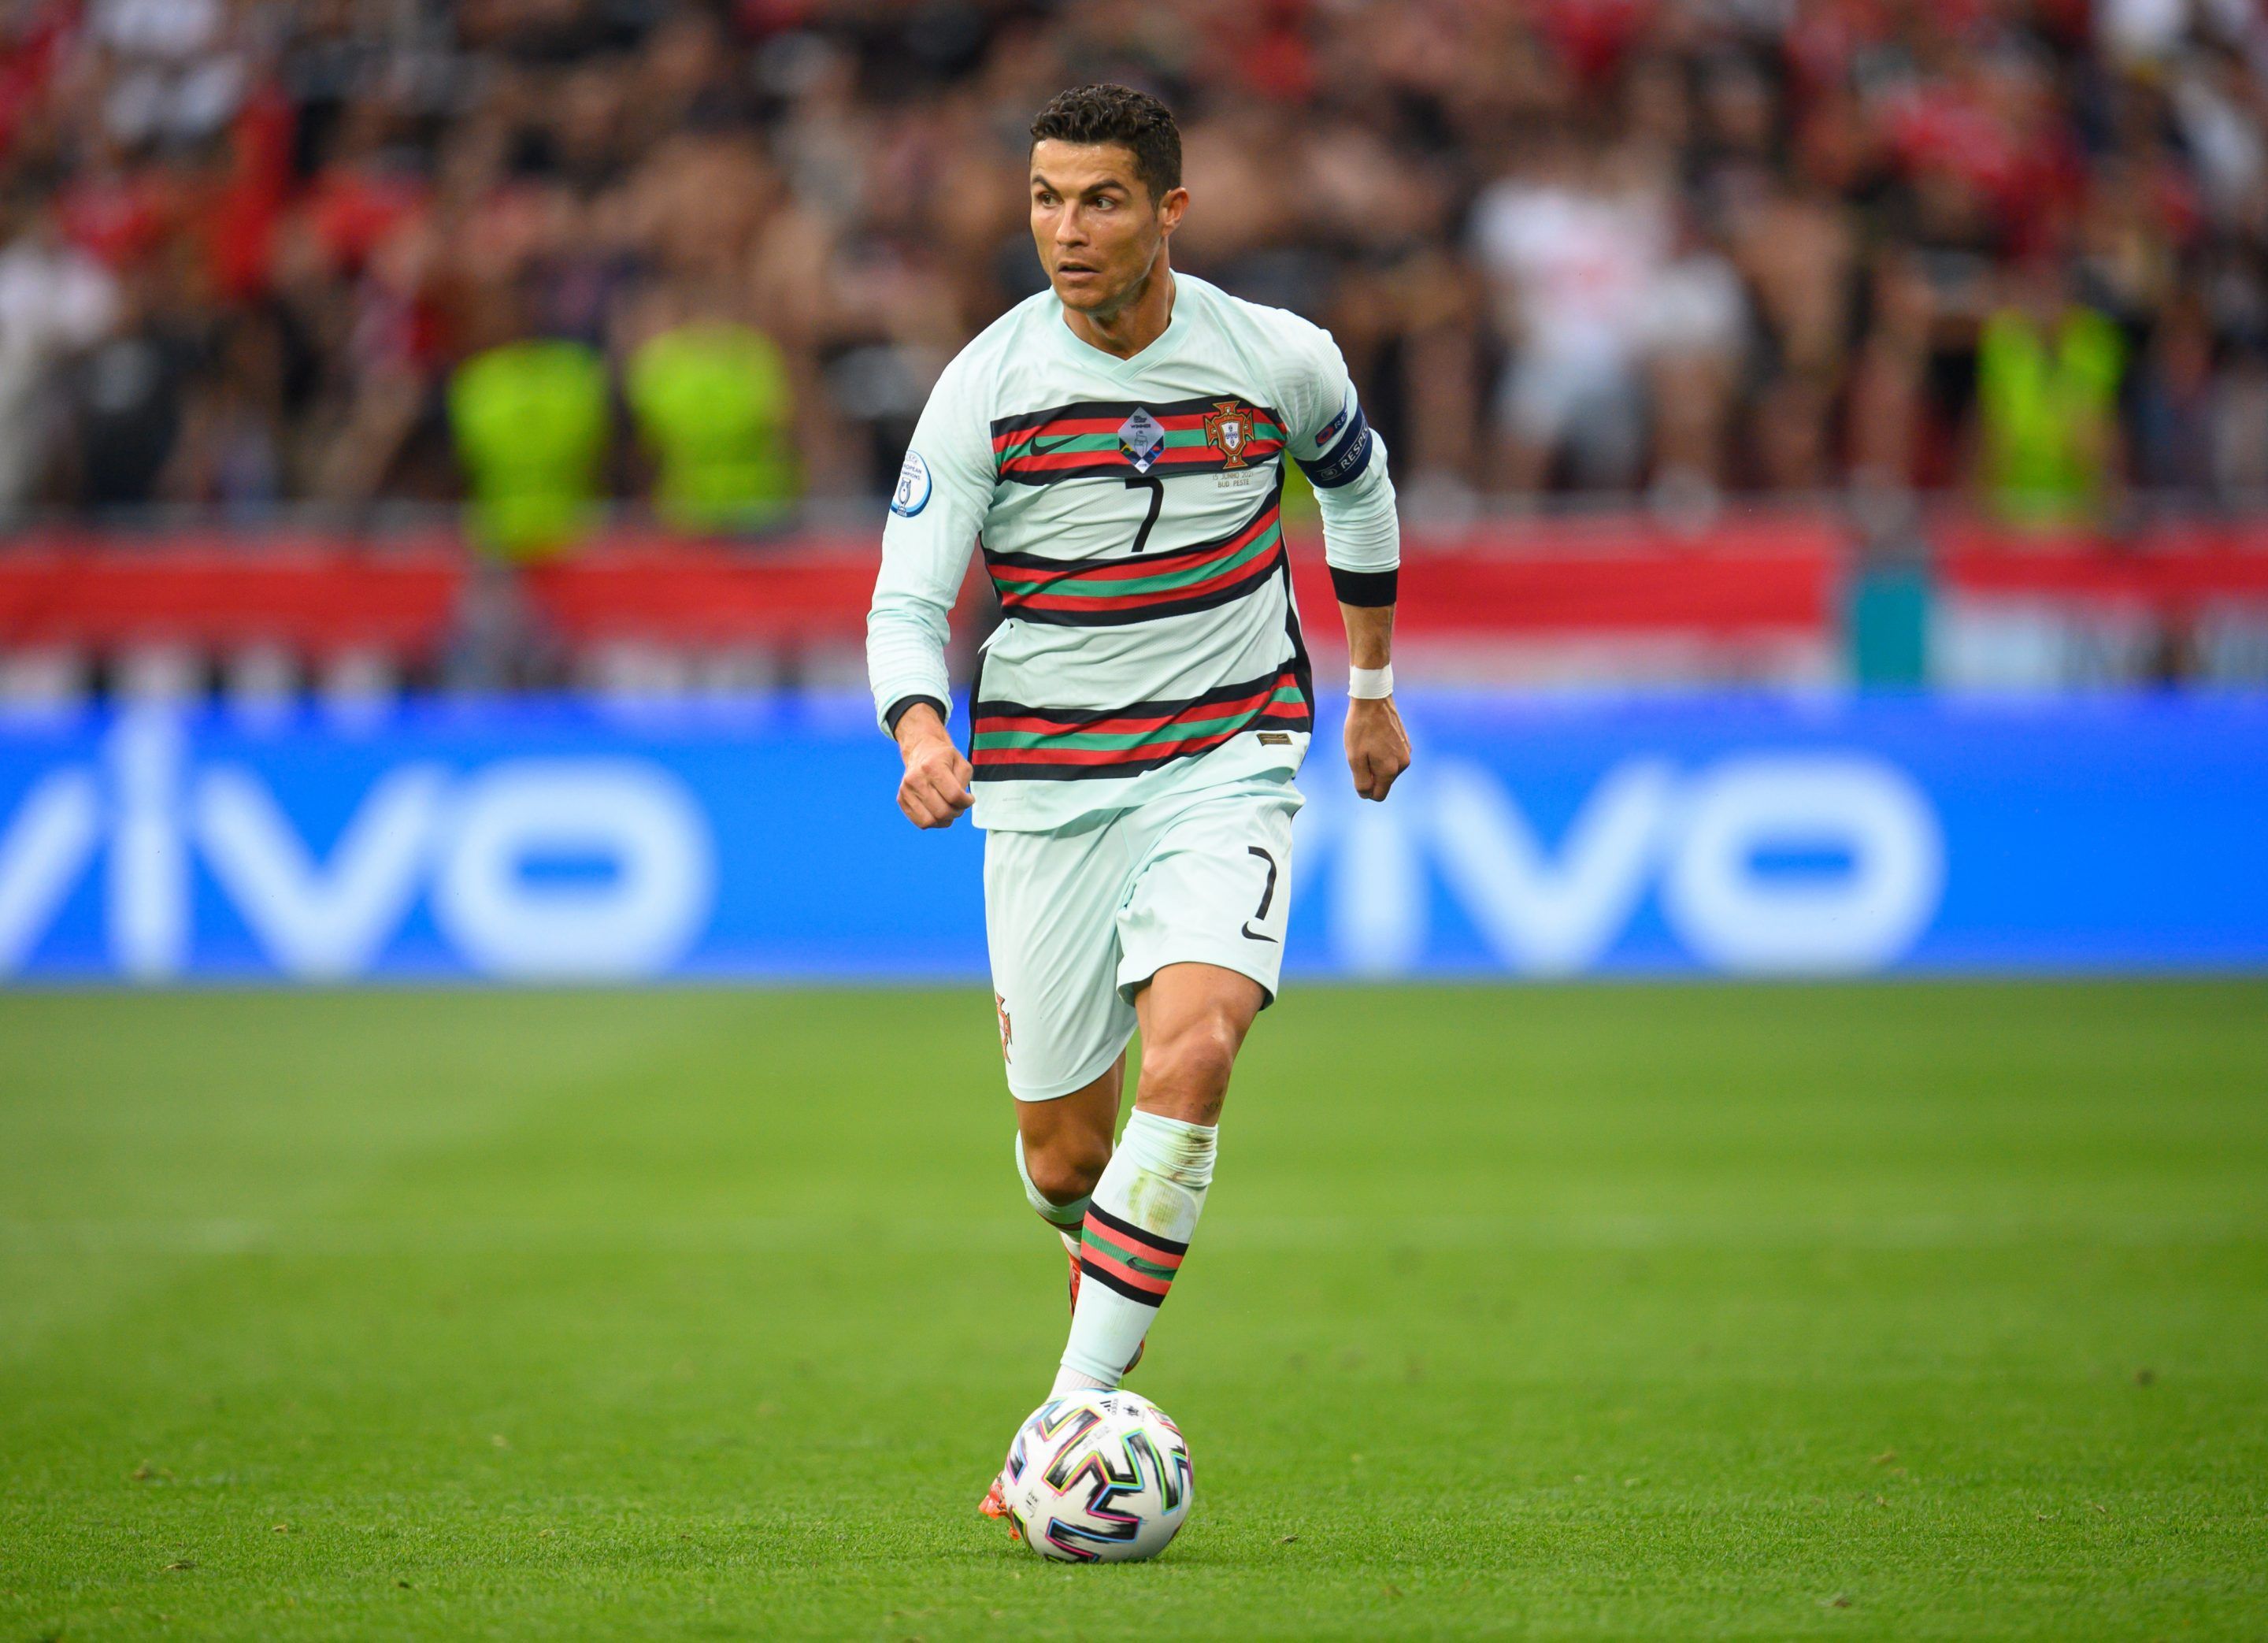 La madre de Cristiano Ronaldo ha declarado el futuro de CR7